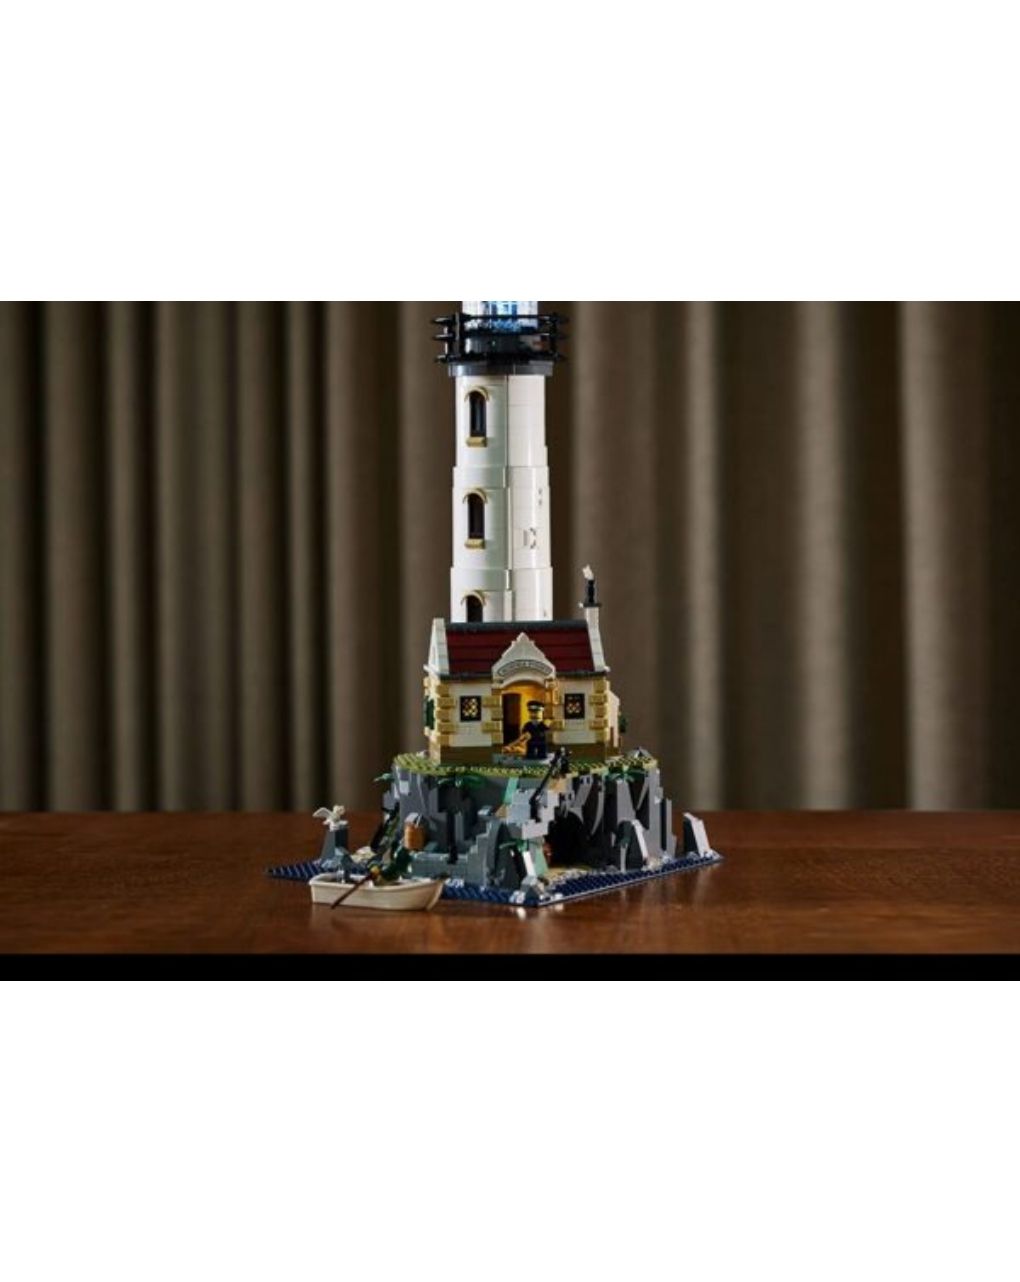 Lego ideas motorized lighthouse 21335 - Lego